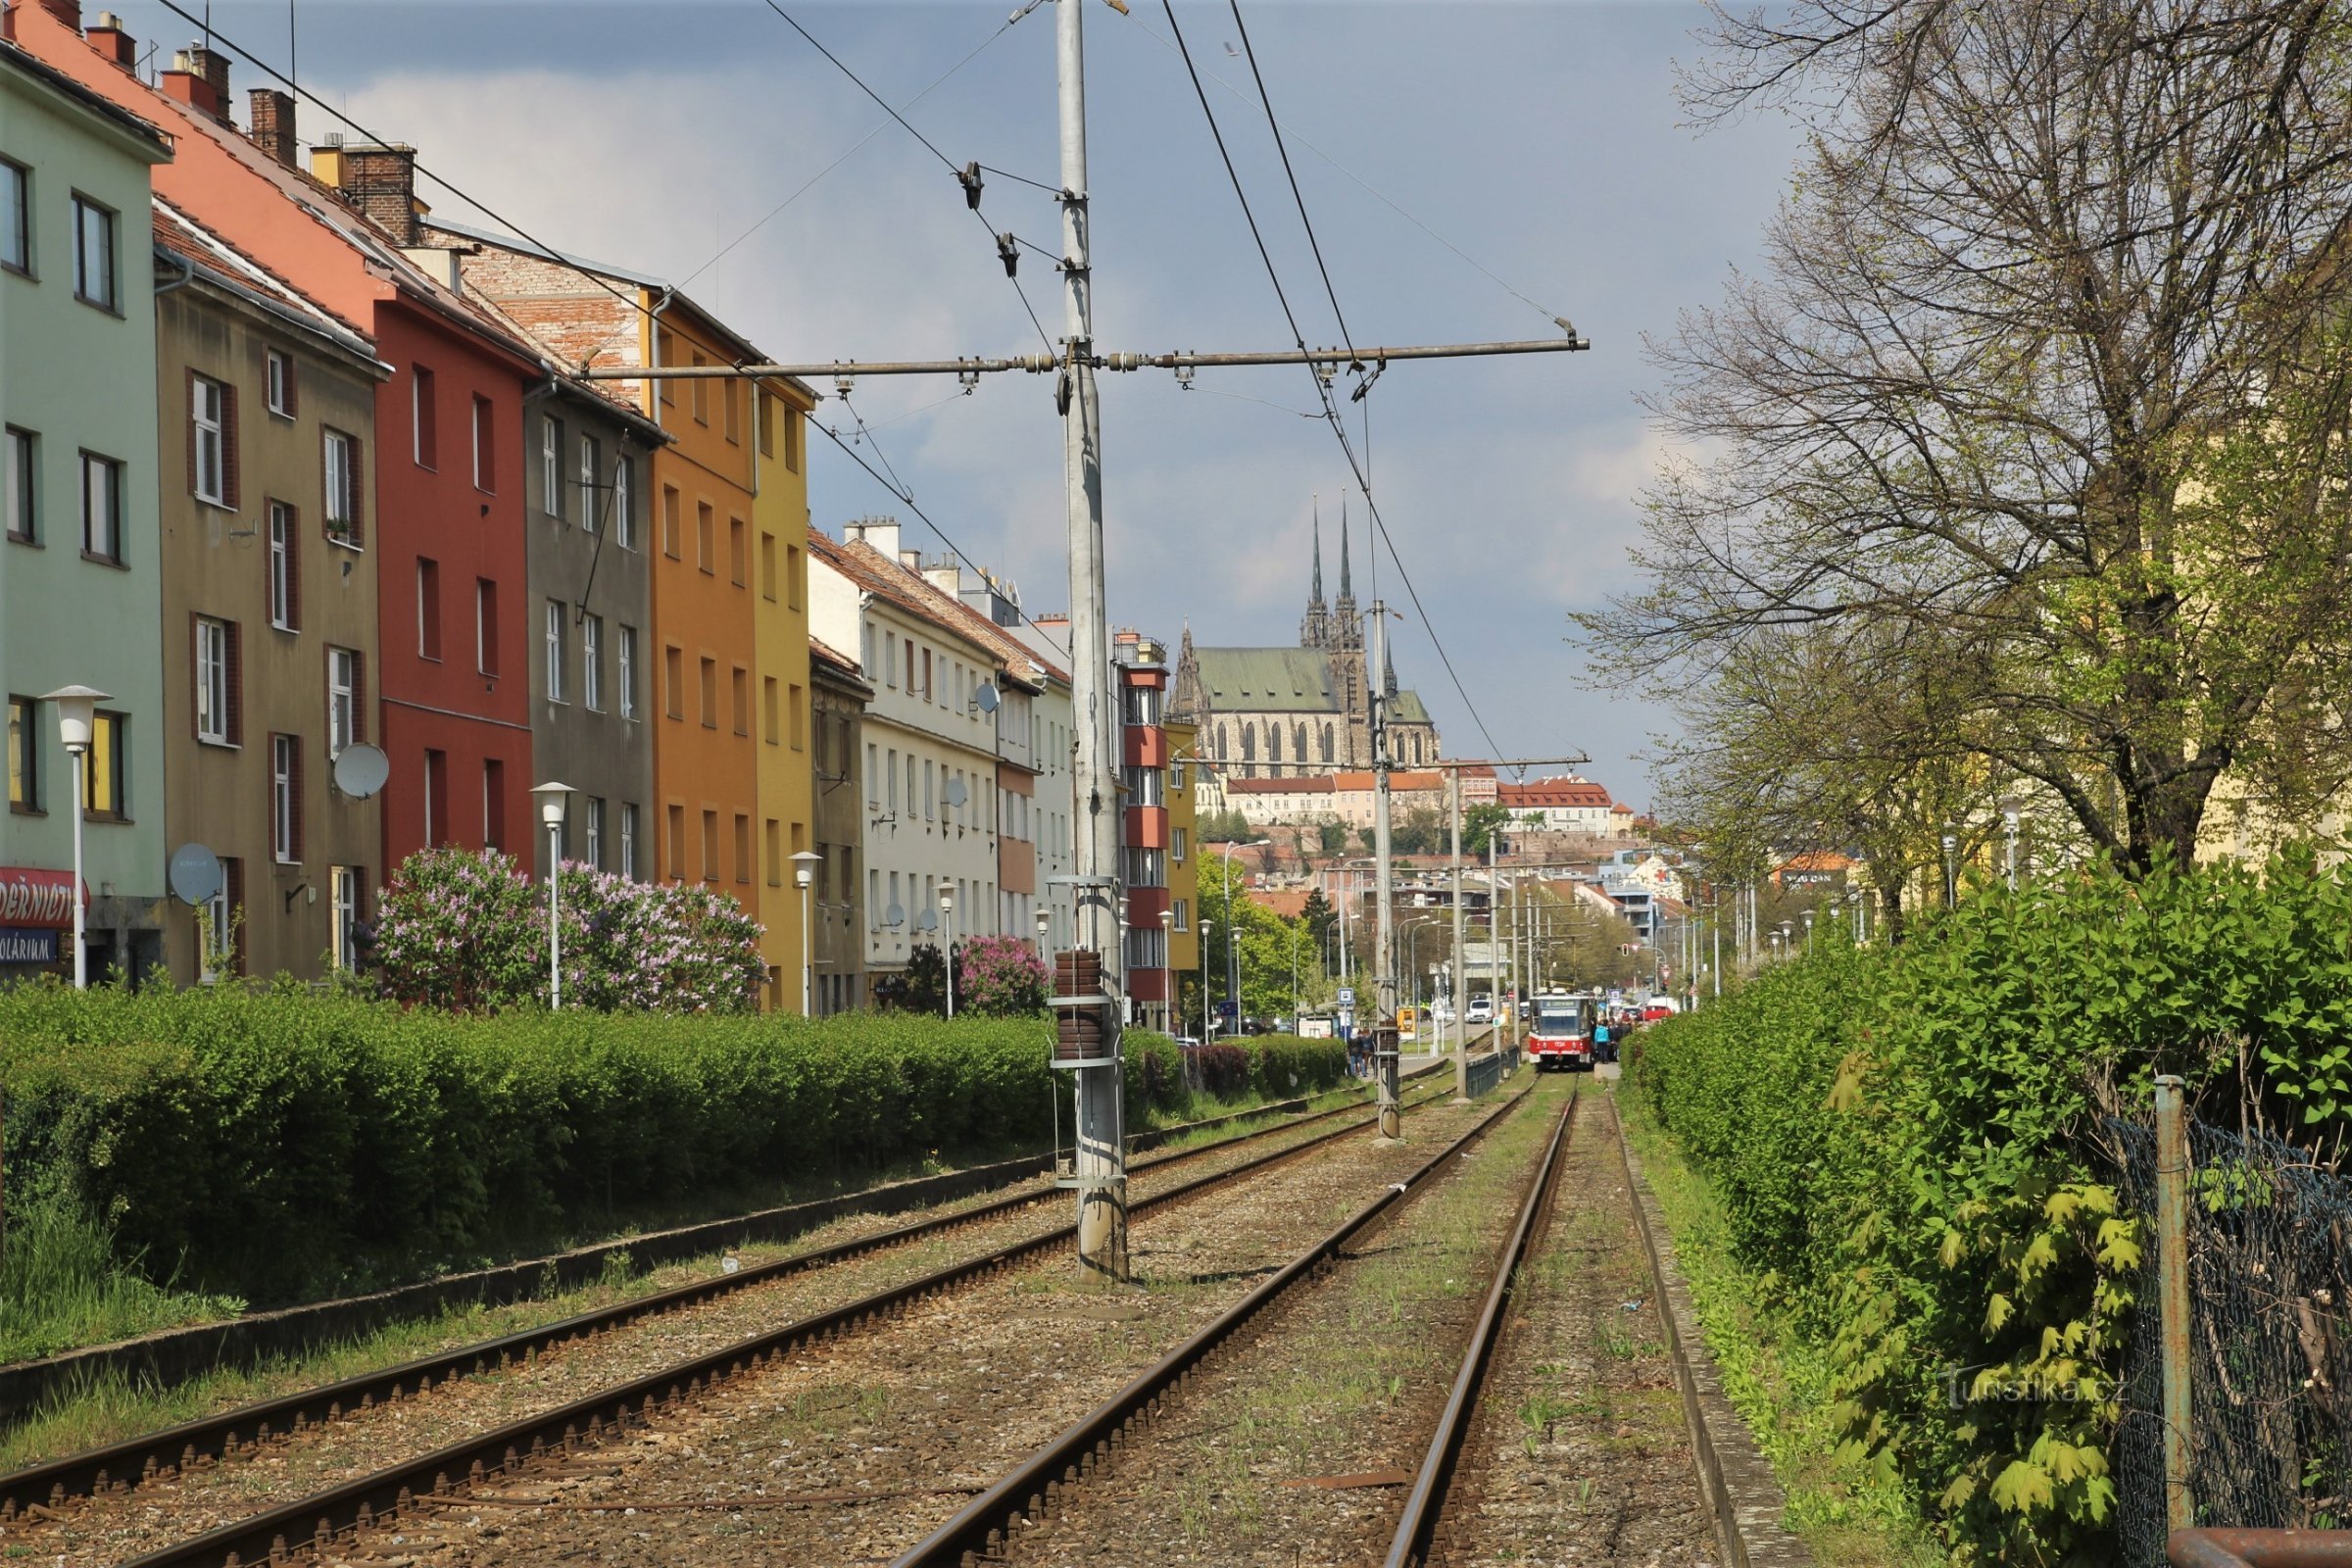 Renneská Street with the Vojtova tram stop